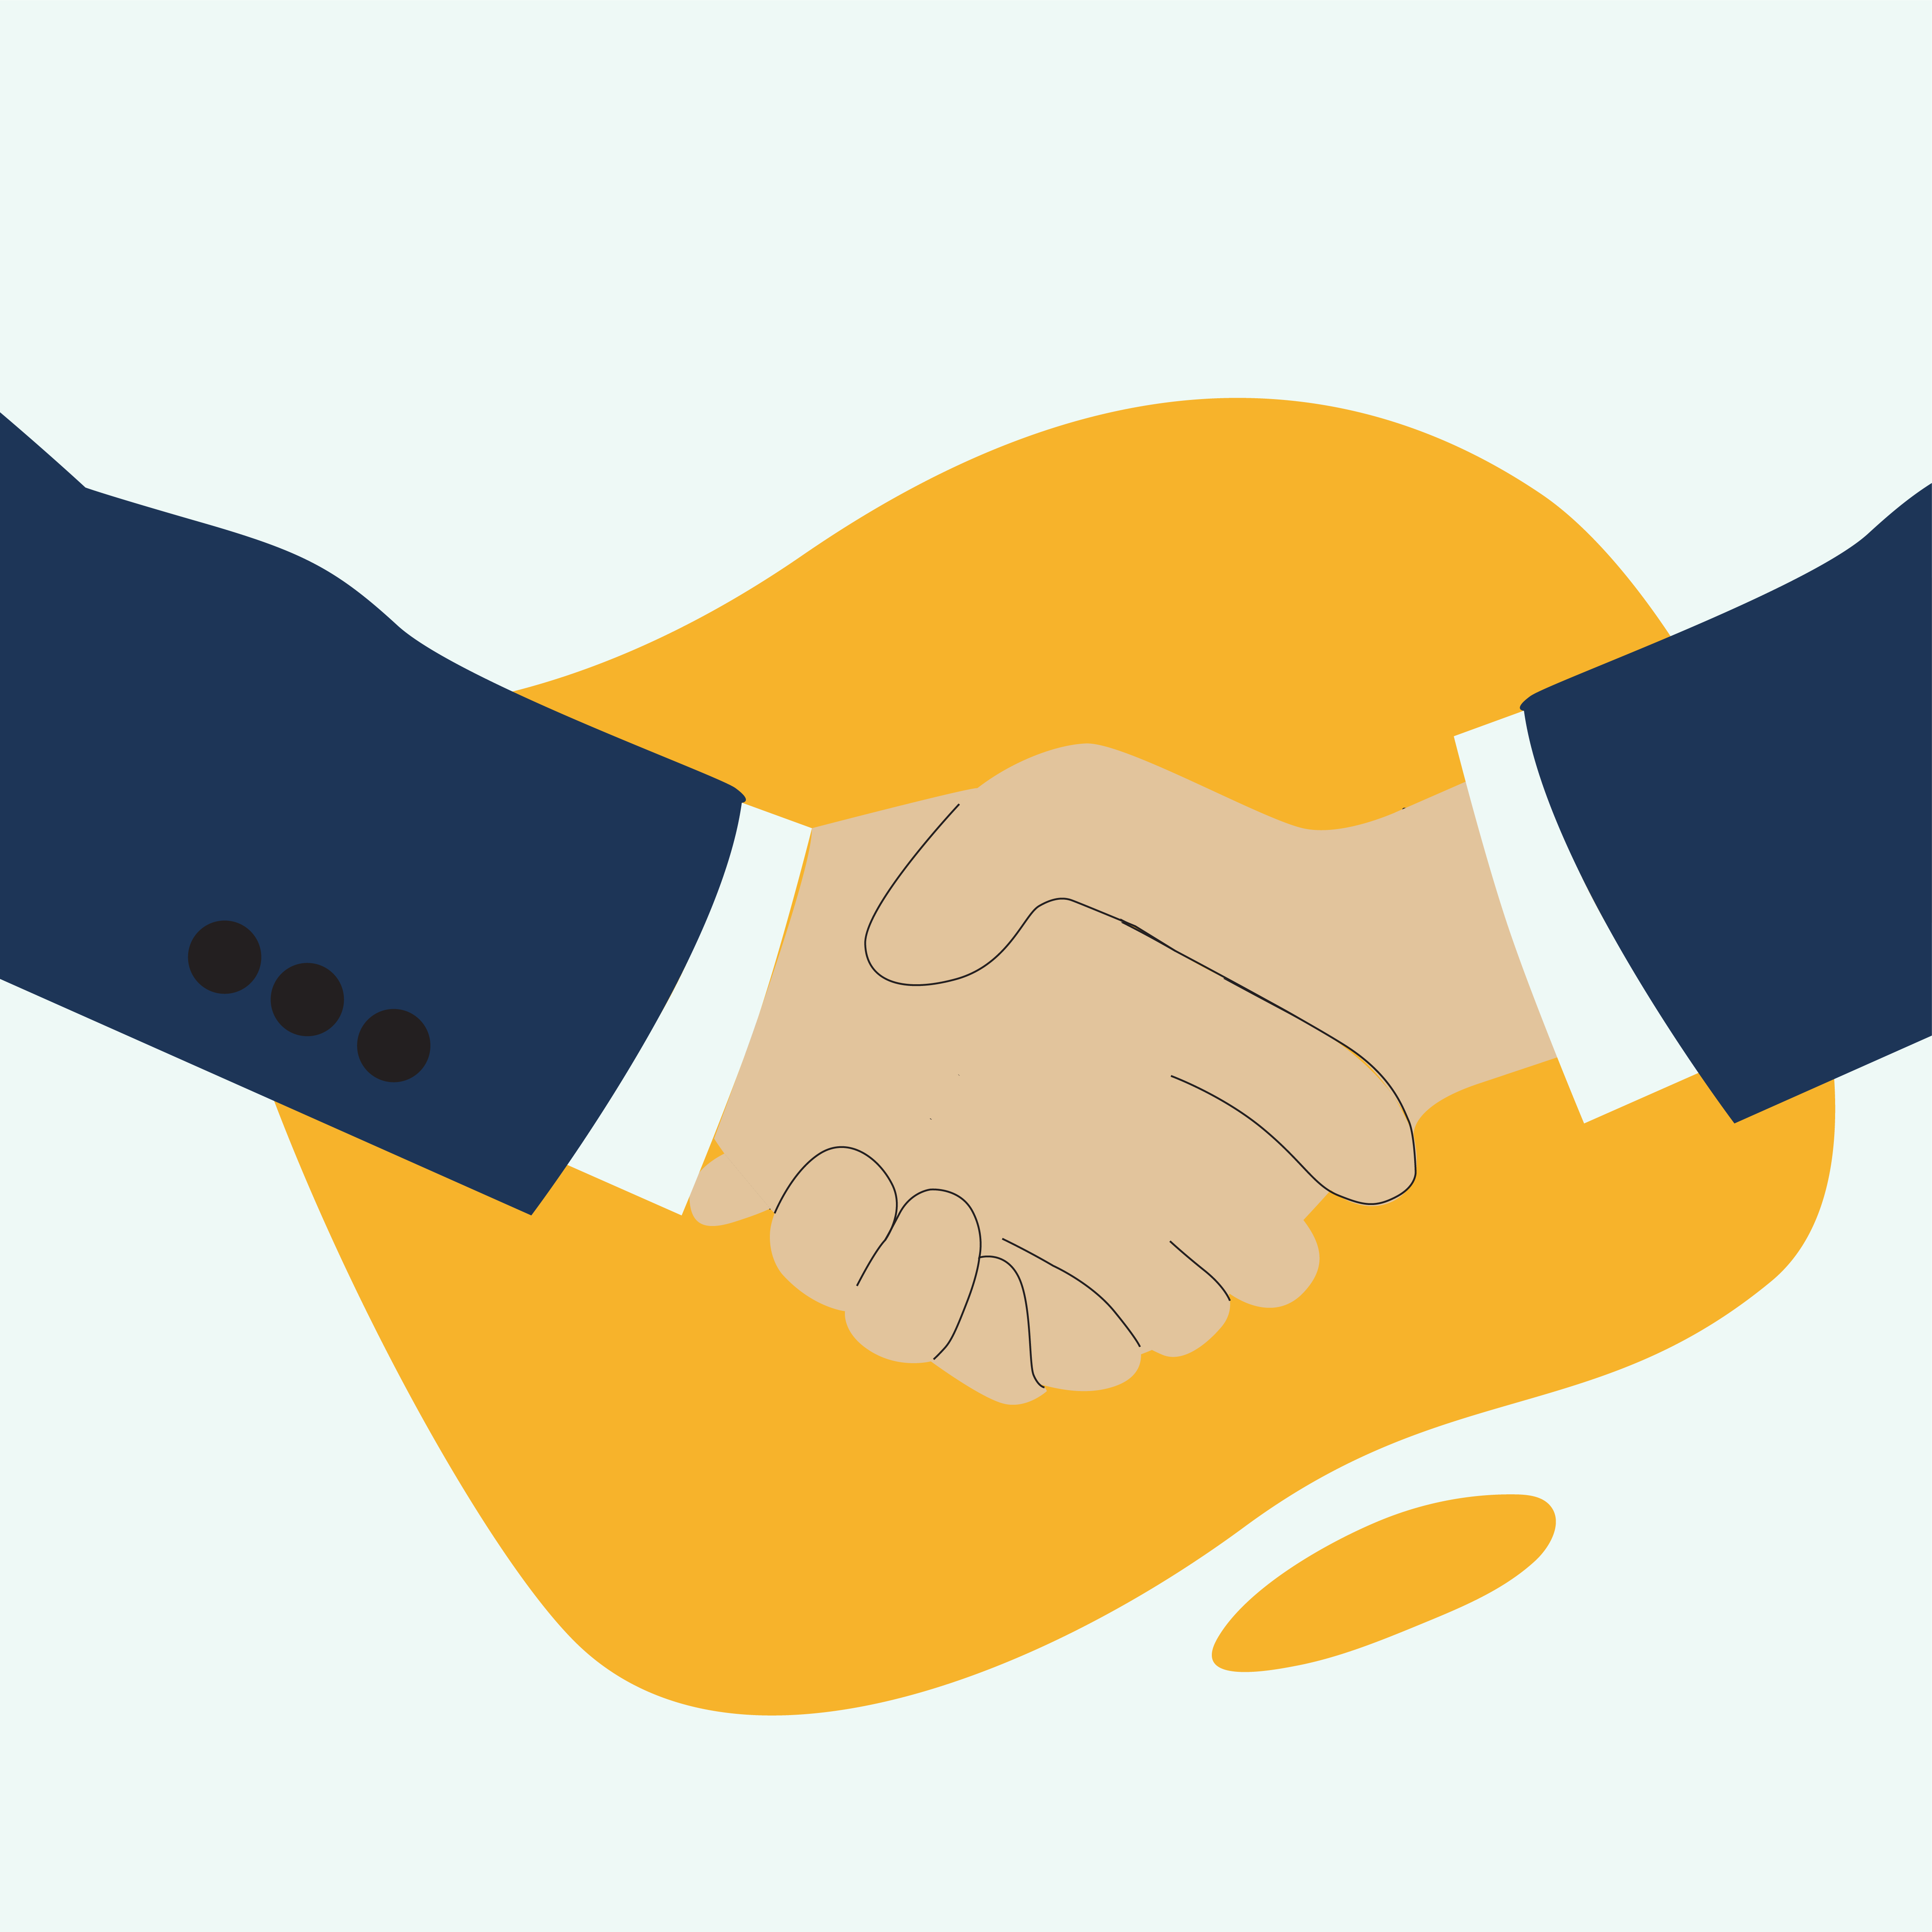 Joint Venture Agreement versus Shareholder Agreement